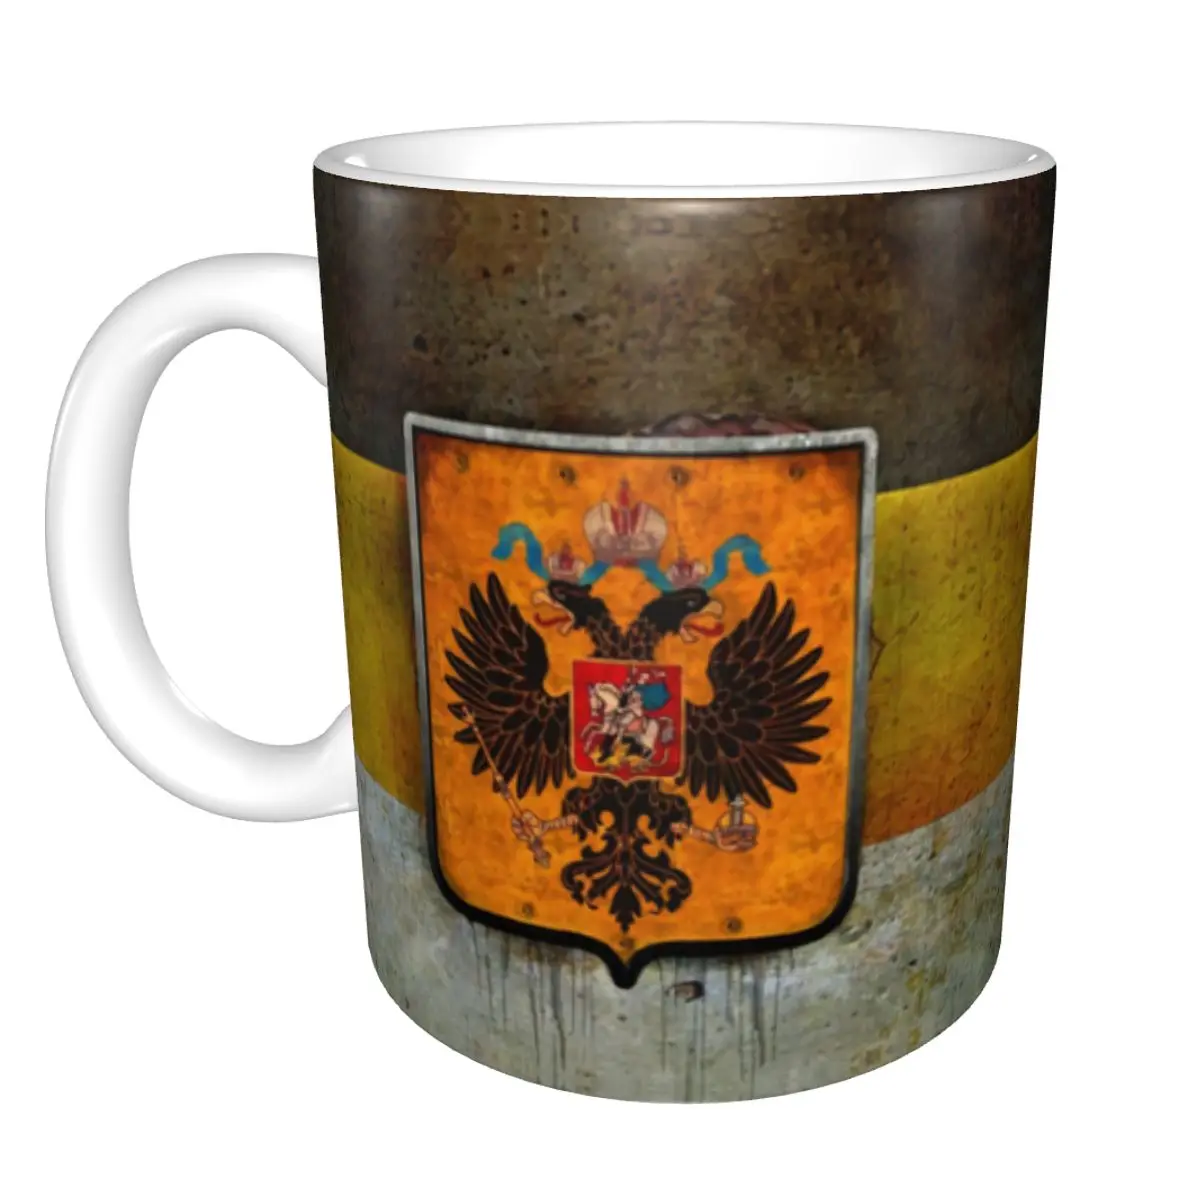 

Кружка в винтажном стиле гранж с изображением Российской империи, керамическая кружка для кофе в виде герба России, креативный подарок